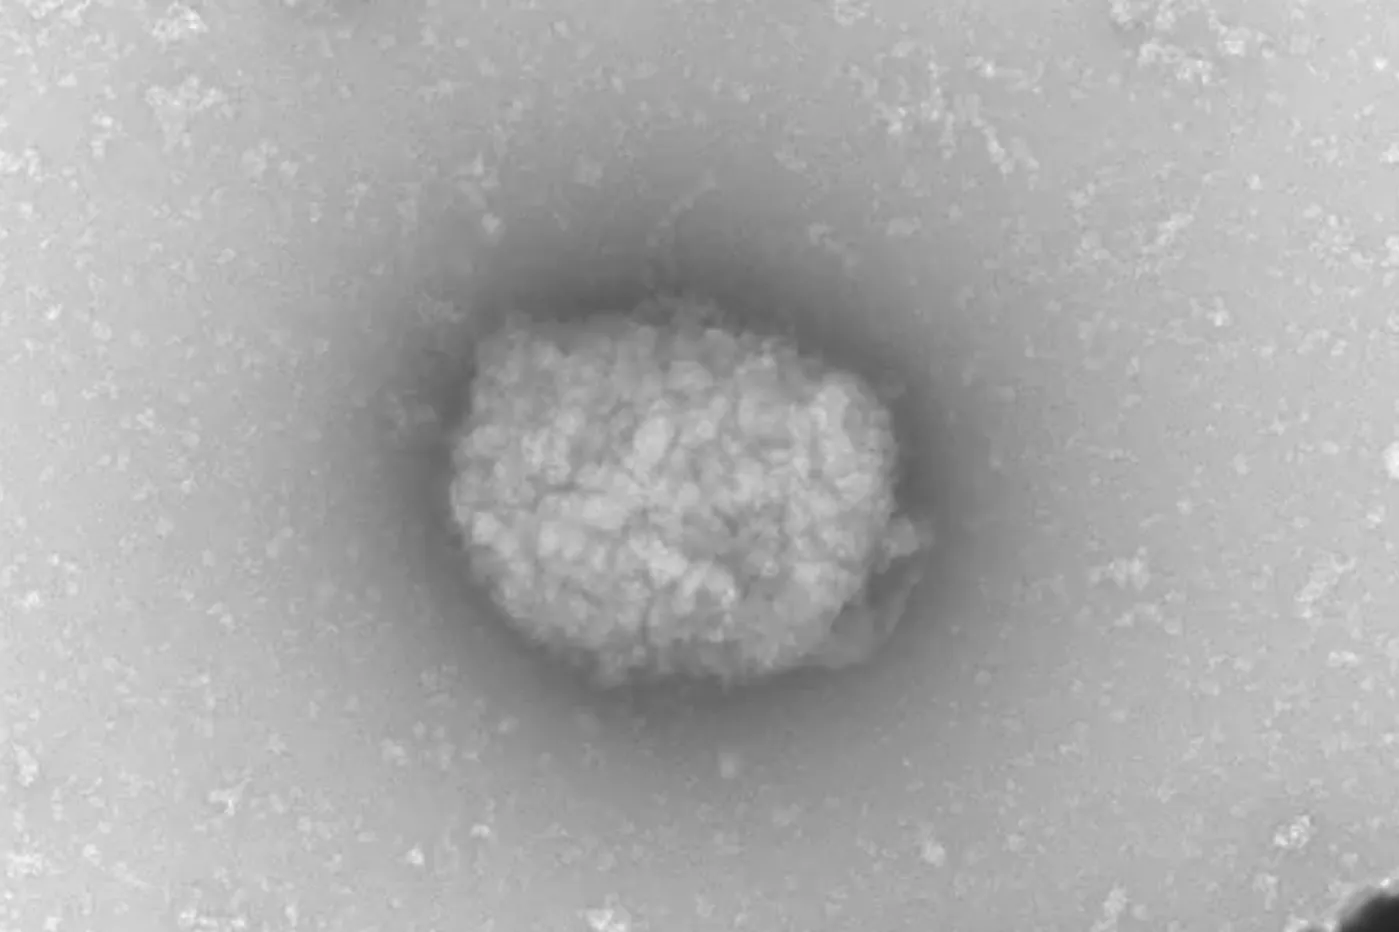 Partículas virales del virus del mono observadas por microscopia electrónica de transmisión directamente del líquido obtenido de pústulas de pacientes infectados. Foto: CSIC/UAM EFE